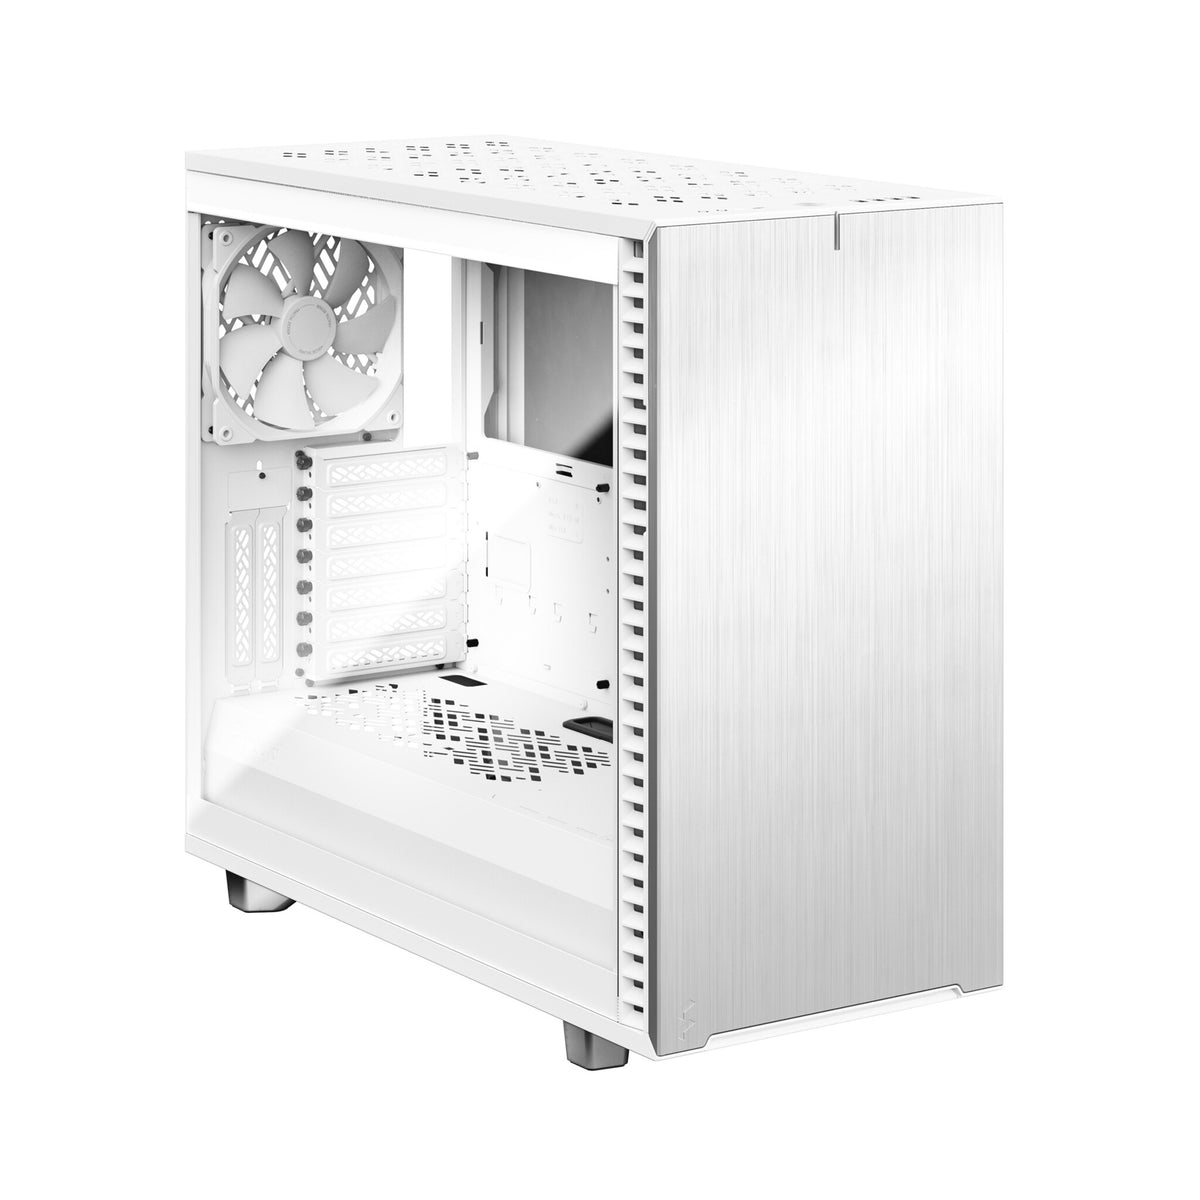 Fractal Design Define 7 - ATX Mid Tower Case in White